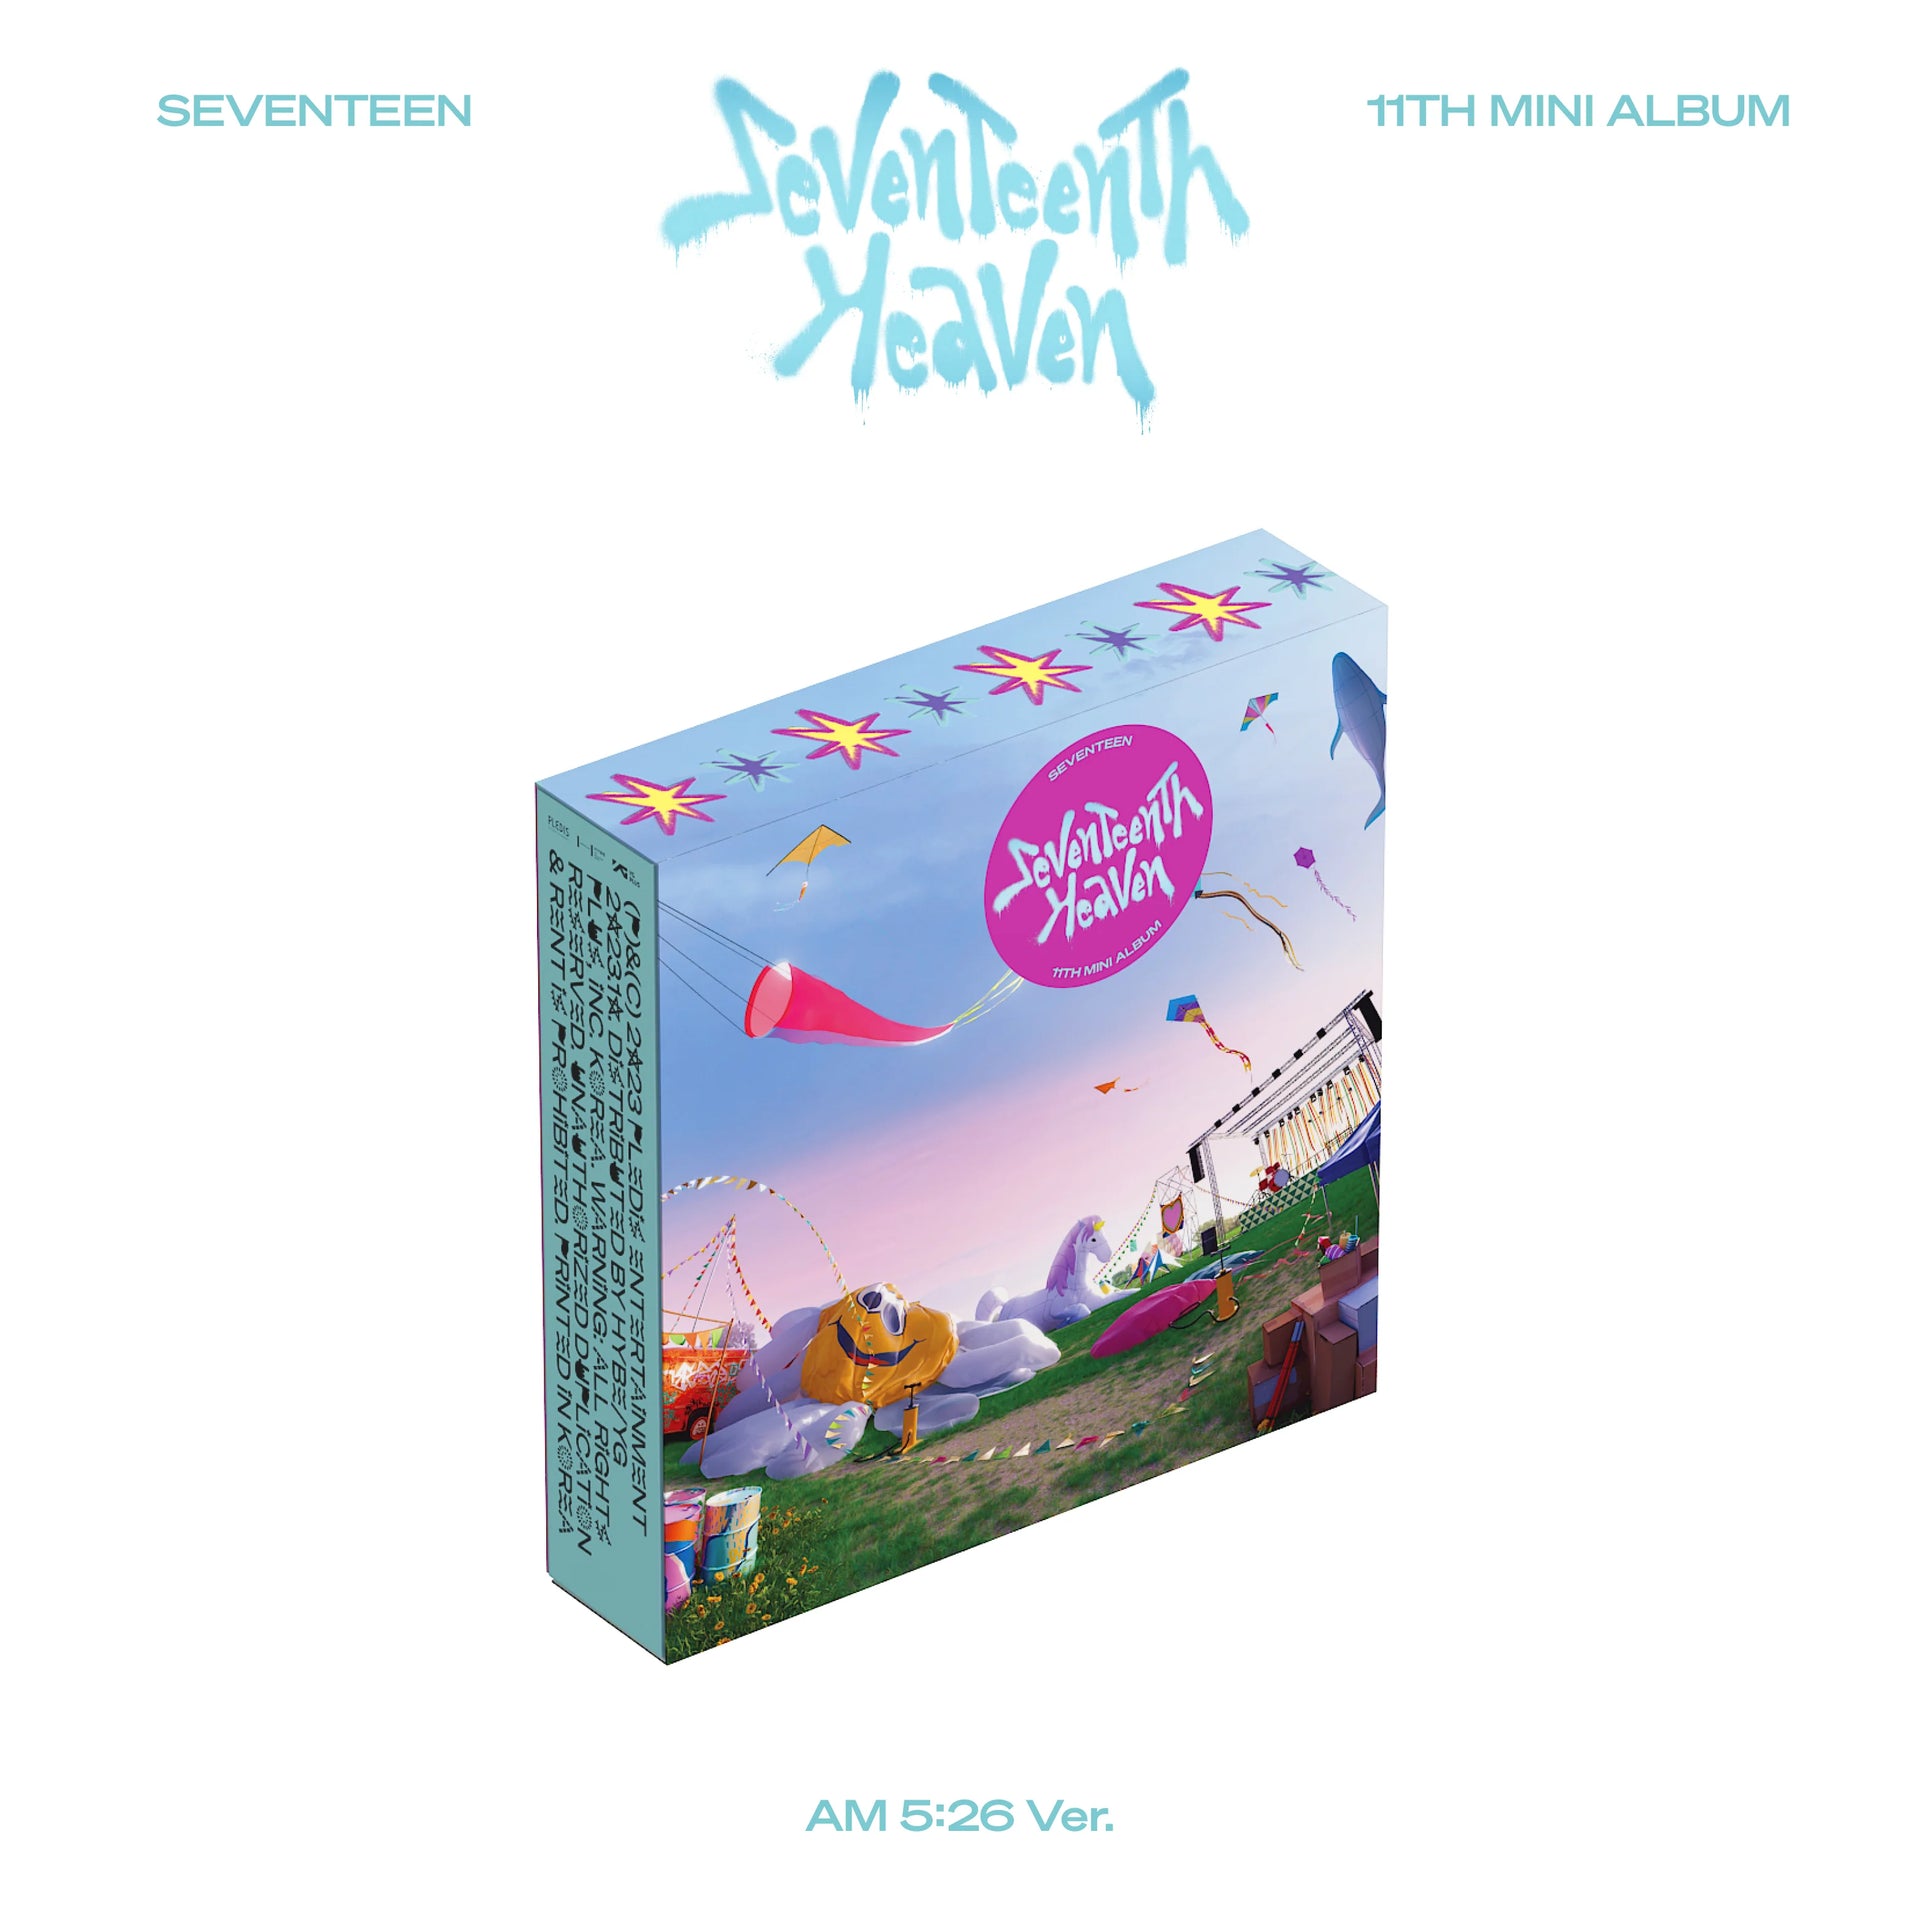 Seventeen 세븐틴 - 11th Mini-Album 'Seventeenth Heaven' +